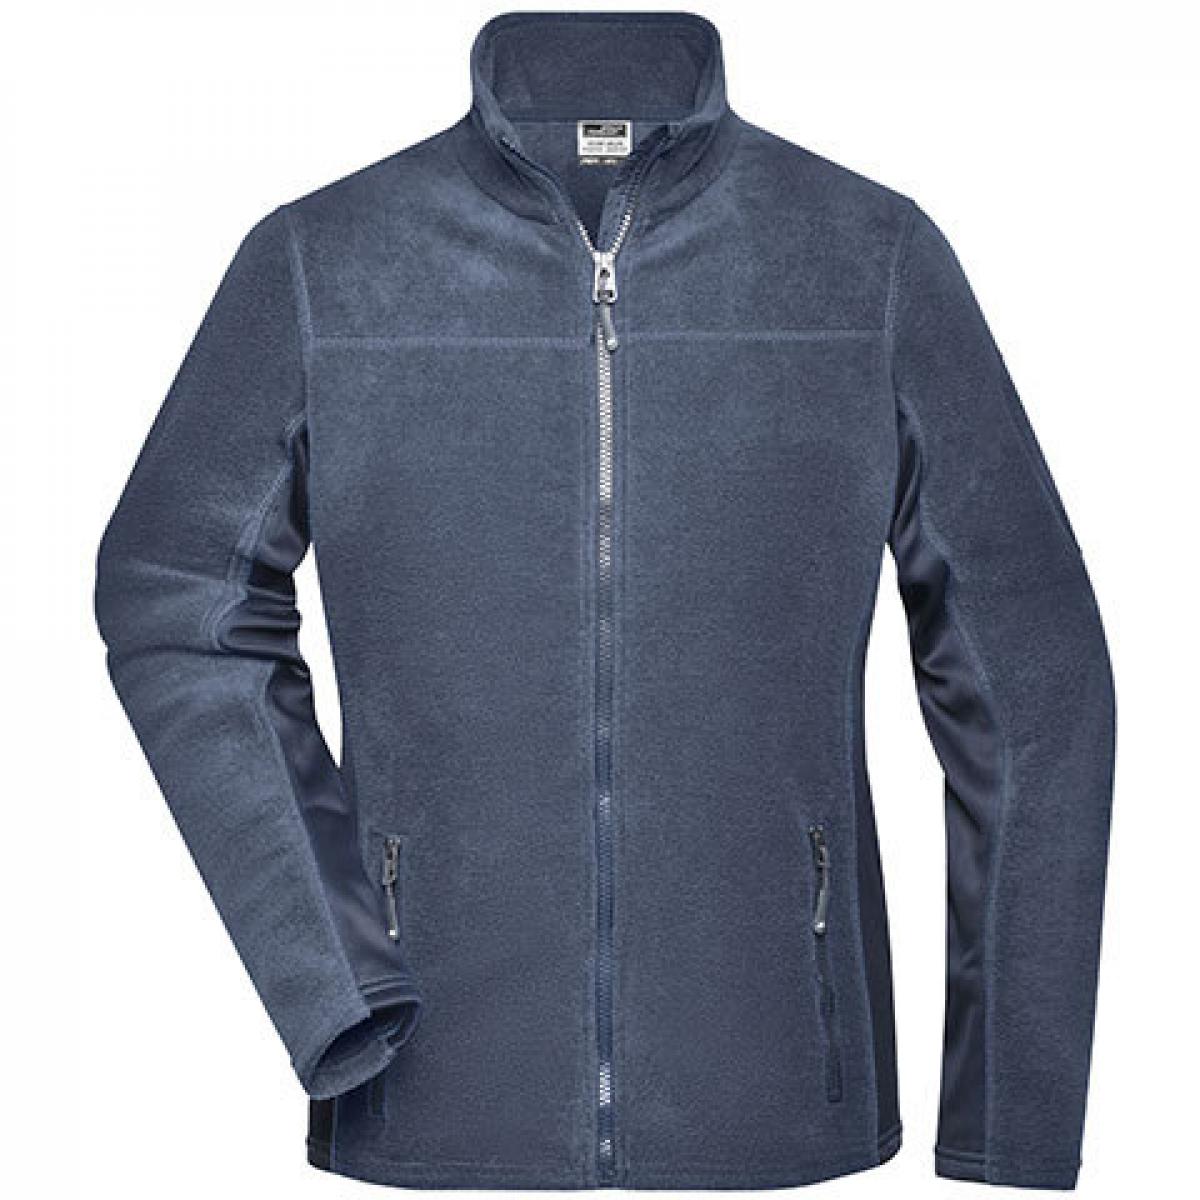 Hersteller: James+Nicholson Herstellernummer: JN841 Artikelbezeichnung: Damen‘ Workwear Fleece Jacket -STRONG- Farbe: Navy/Navy